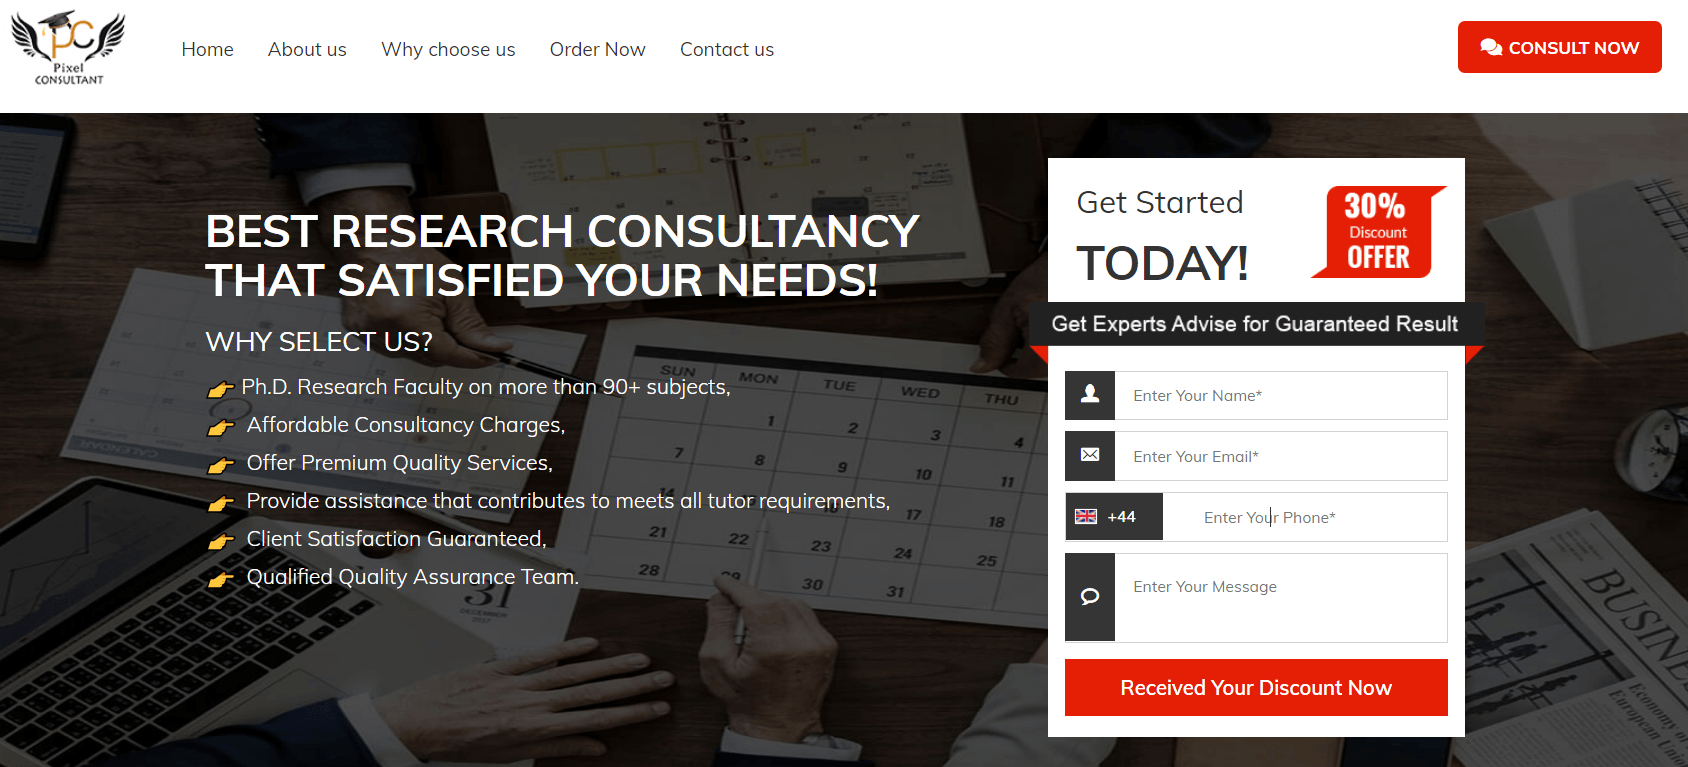 pixel-consultant.com